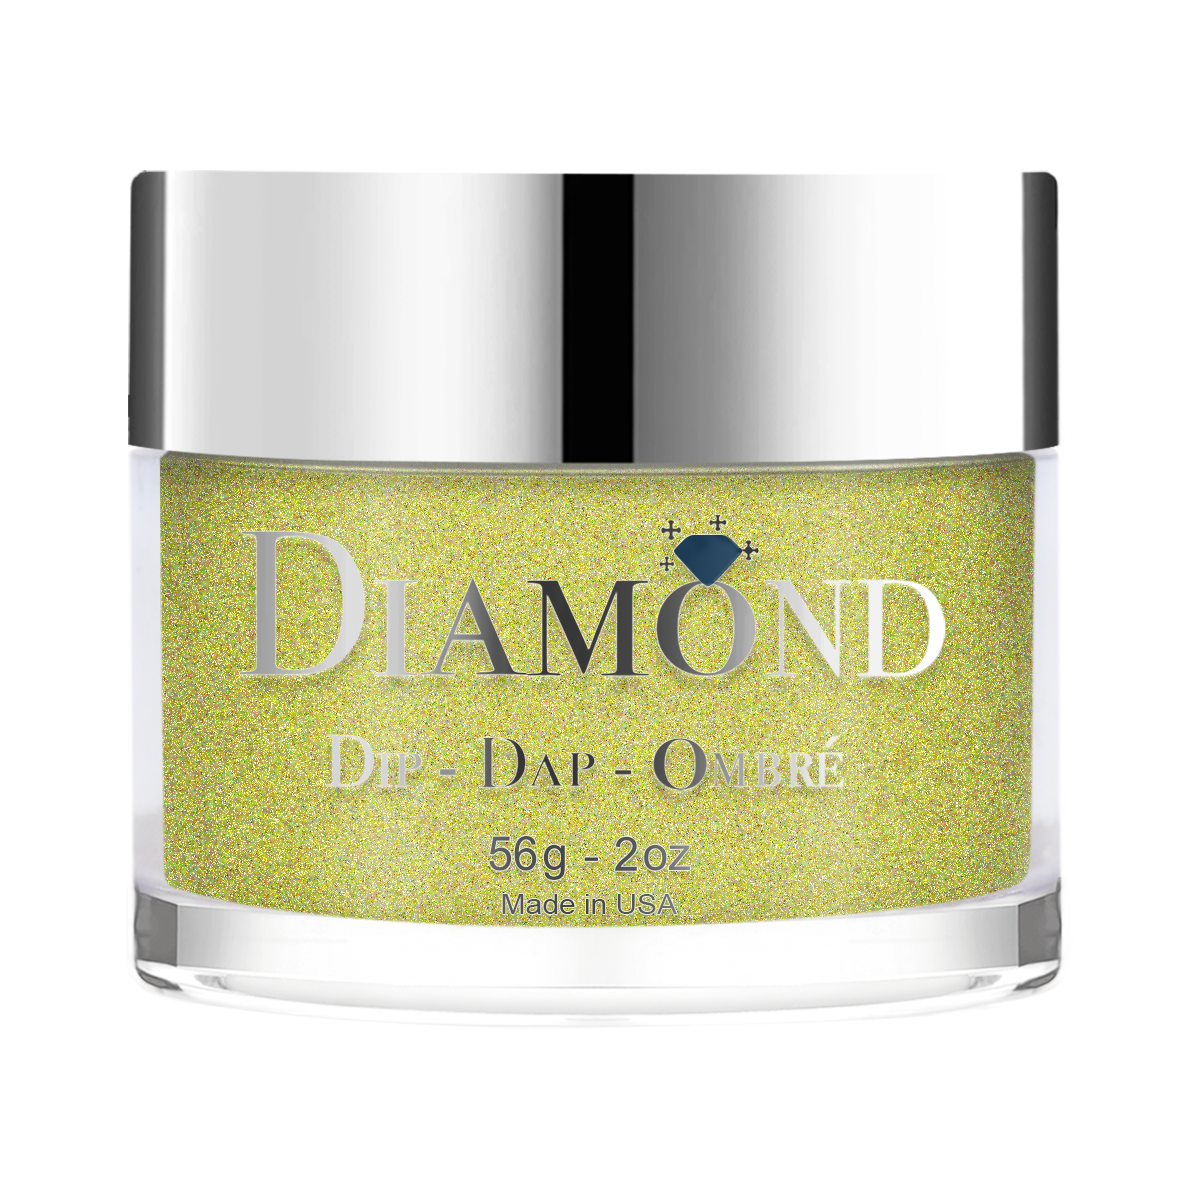 Diamond Dip & Dap Ombre Powder - 132